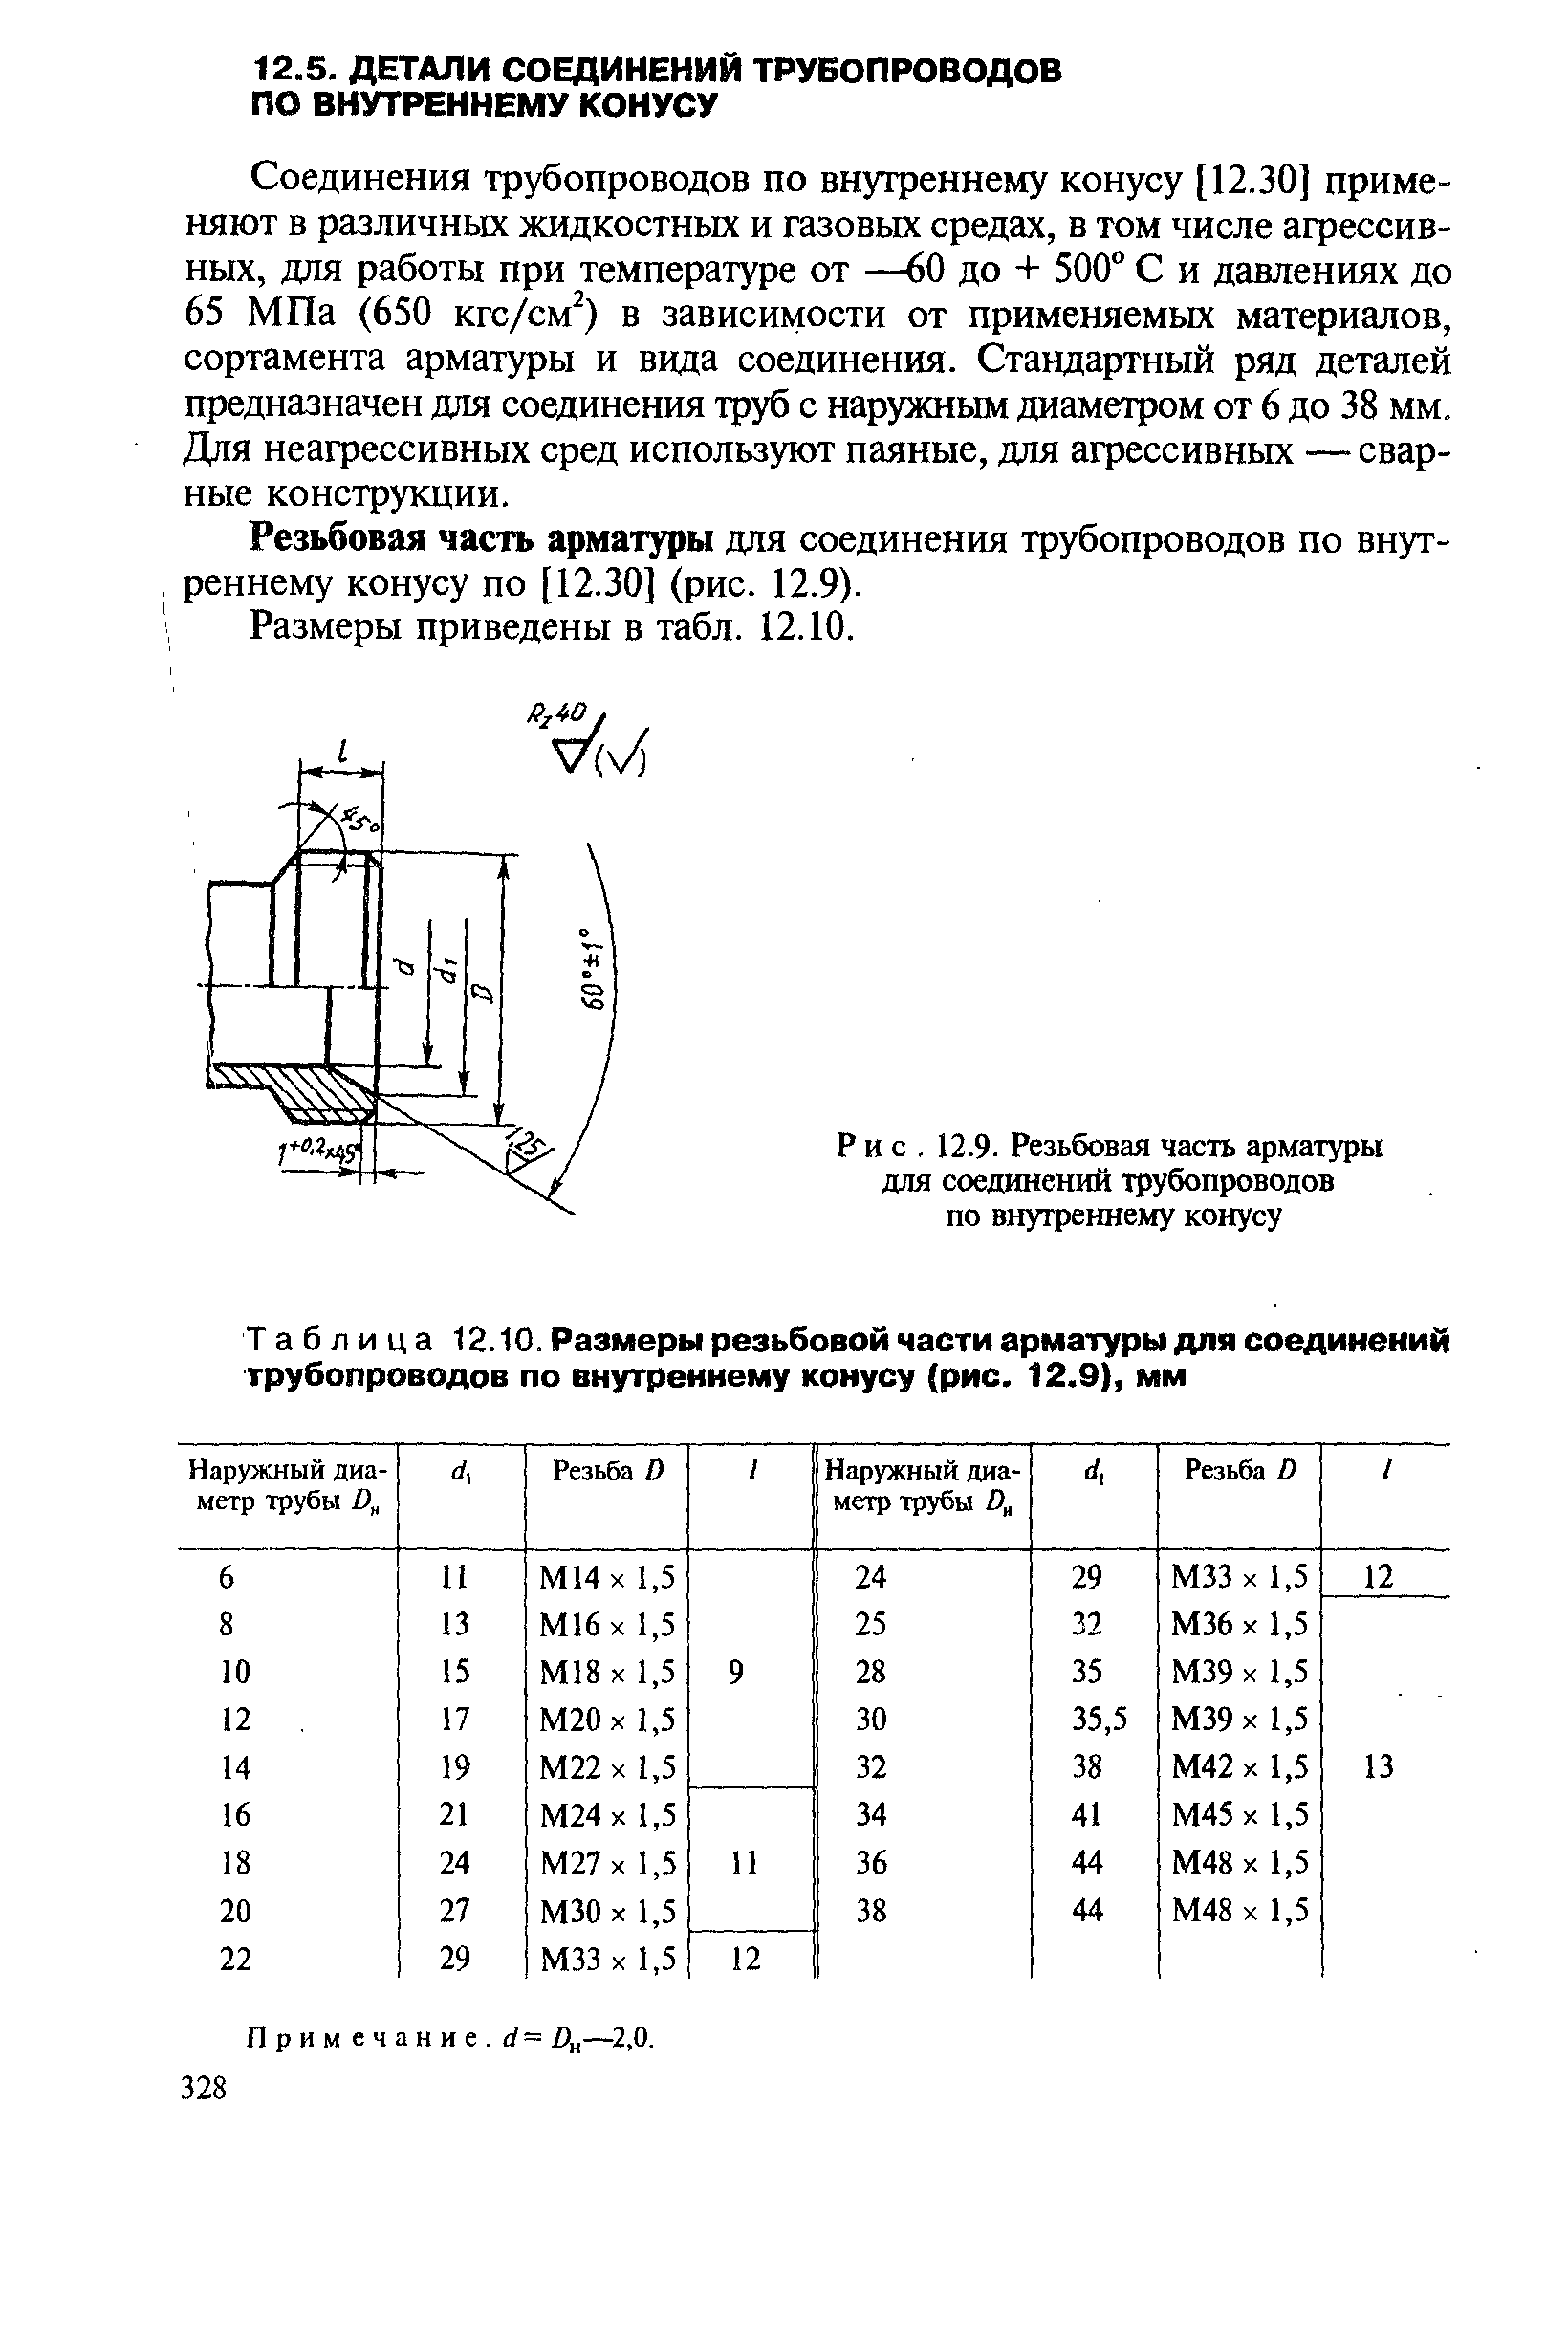 Таблица 12.10. Размеры резьбовой части арматуры для <a href="/info/94752">соединений трубопроводов</a> по внутреннему конусу (рис. 12.9), мм
